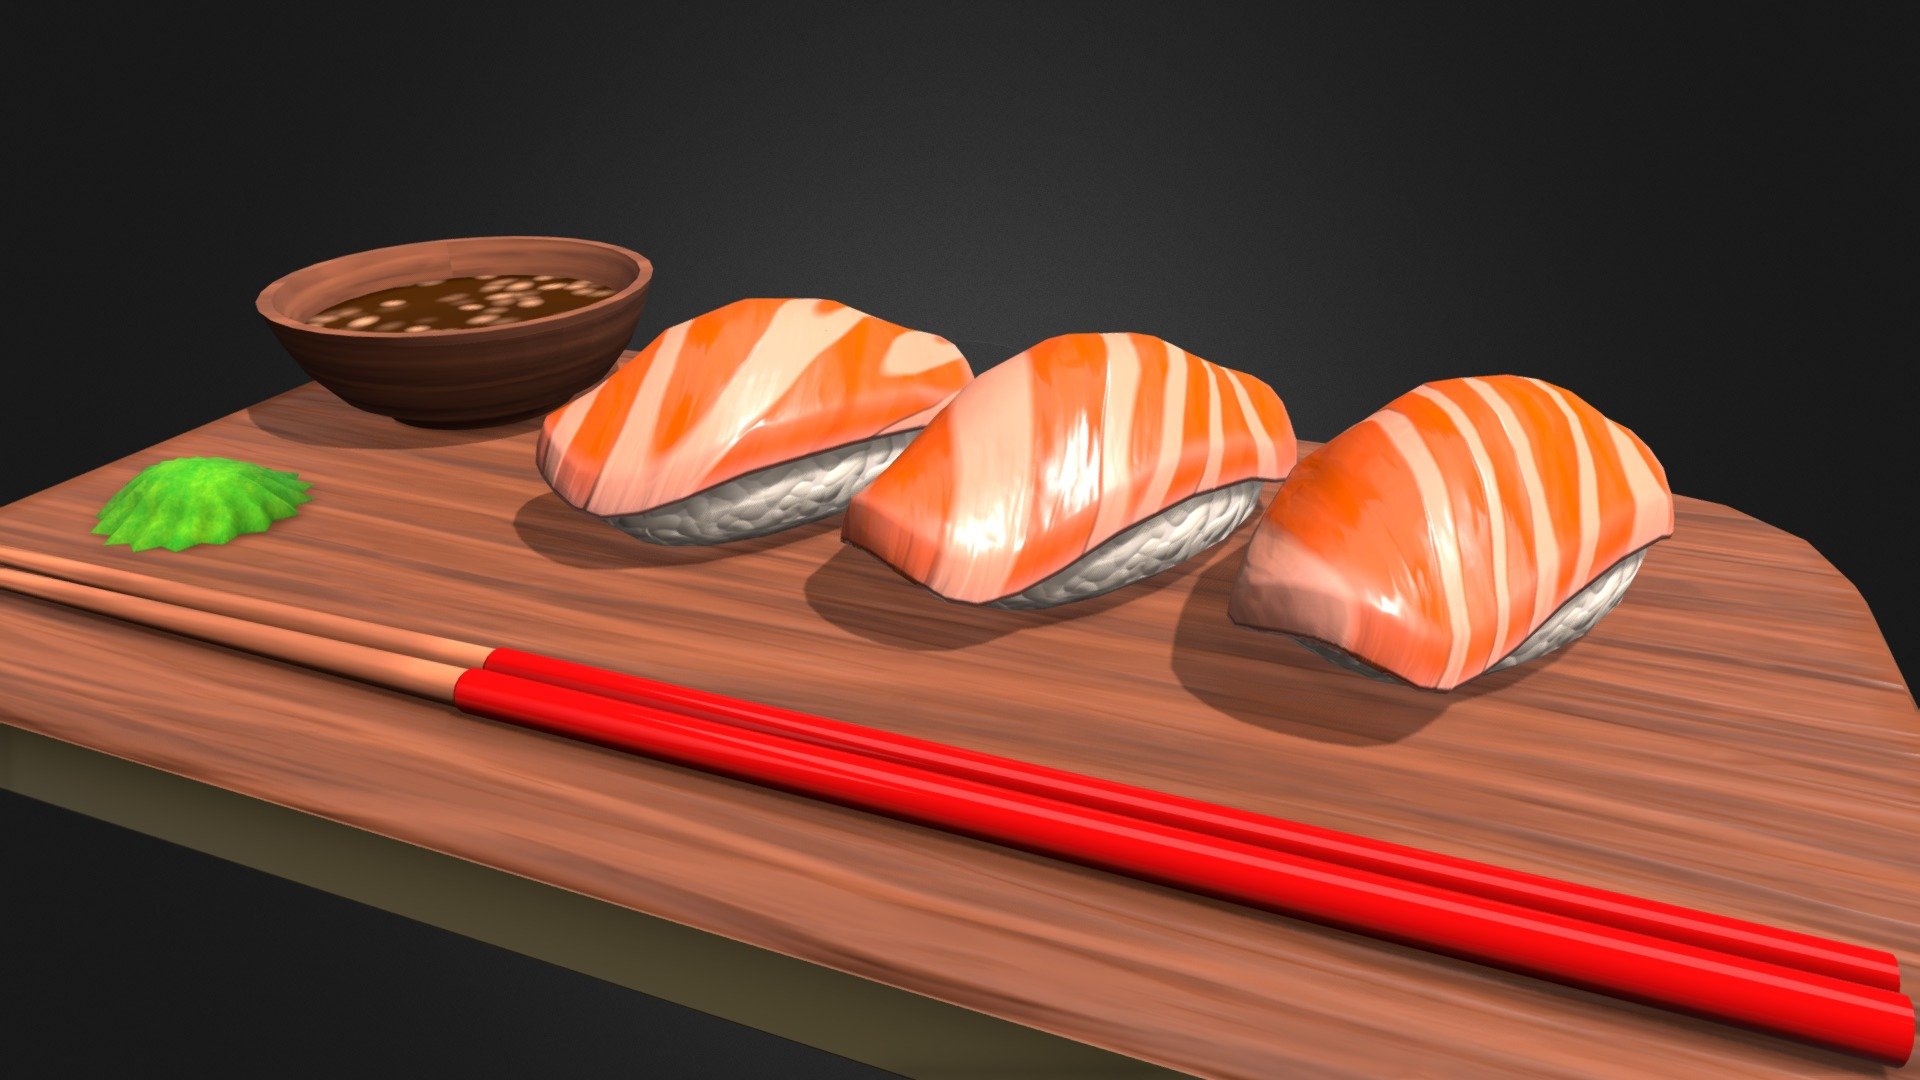 Yummy - Salmon Sushi - 3D model by Daniel K. (@danielkey) 3d model